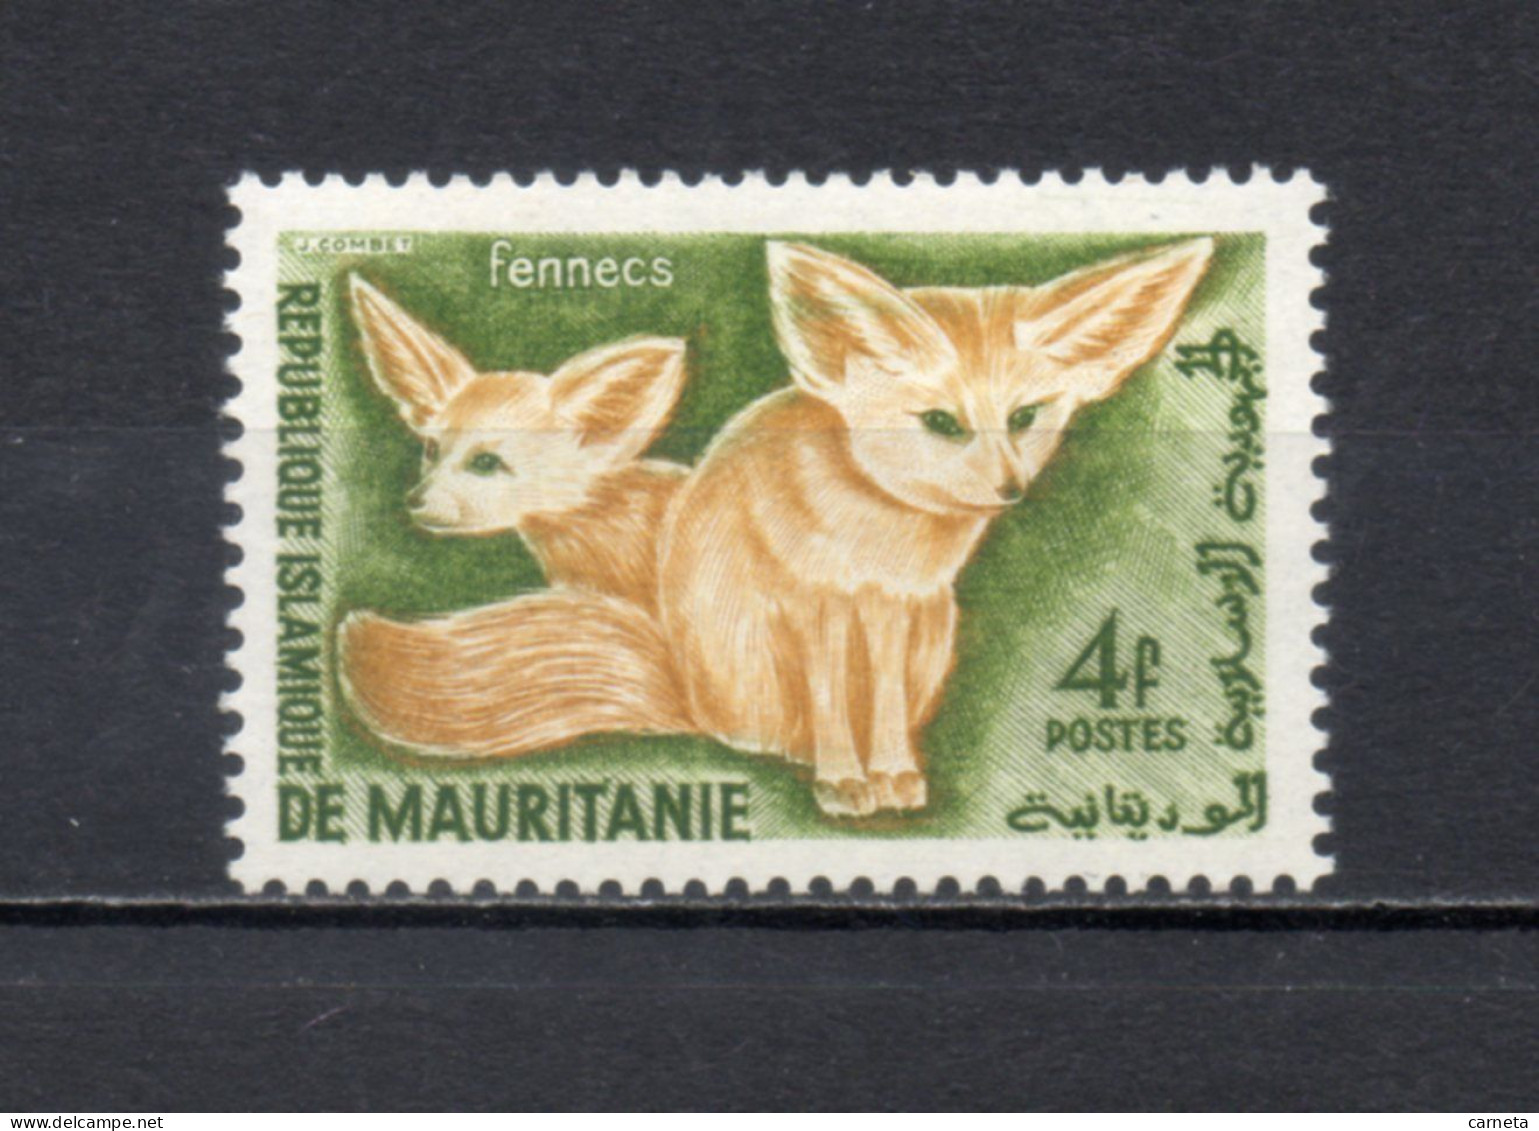 MAURITANIE  N° 144   NEUF SANS CHARNIERE   COTE 0.80€    ANIMAUX FAUNE - Mauritania (1960-...)